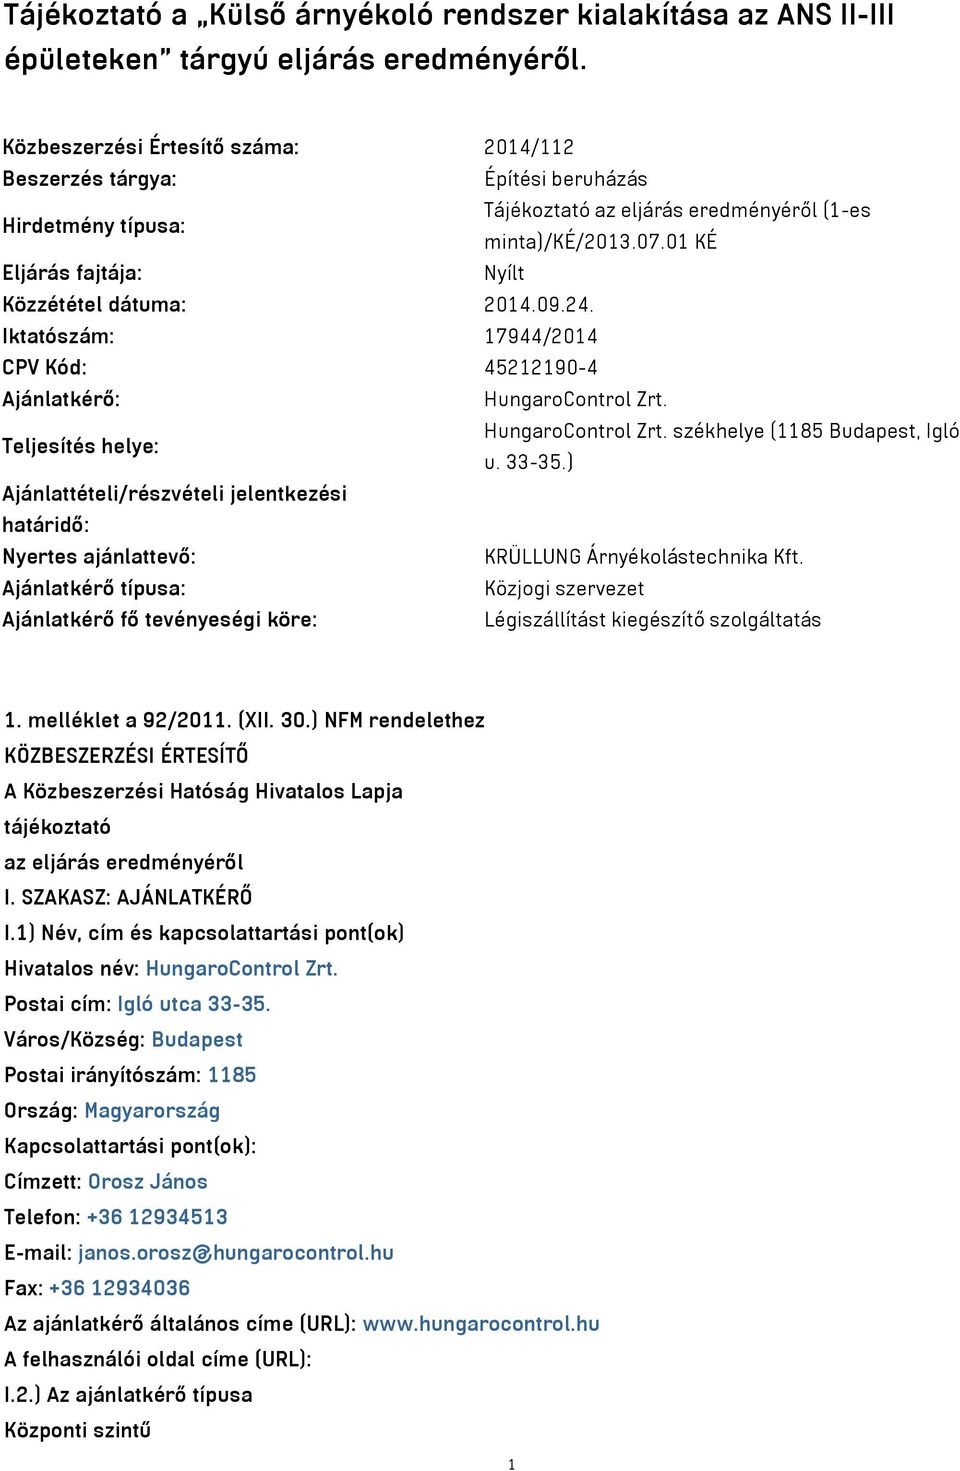 01 KÉ Eljárás fajtája: Nyílt Közzététel dátuma: 2014.09.24. Iktatószám: 17944/2014 CPV Kód: 45212190-4 Ajánlatkérő: HungaroControl Zrt. Teljesítés helye: HungaroControl Zrt.